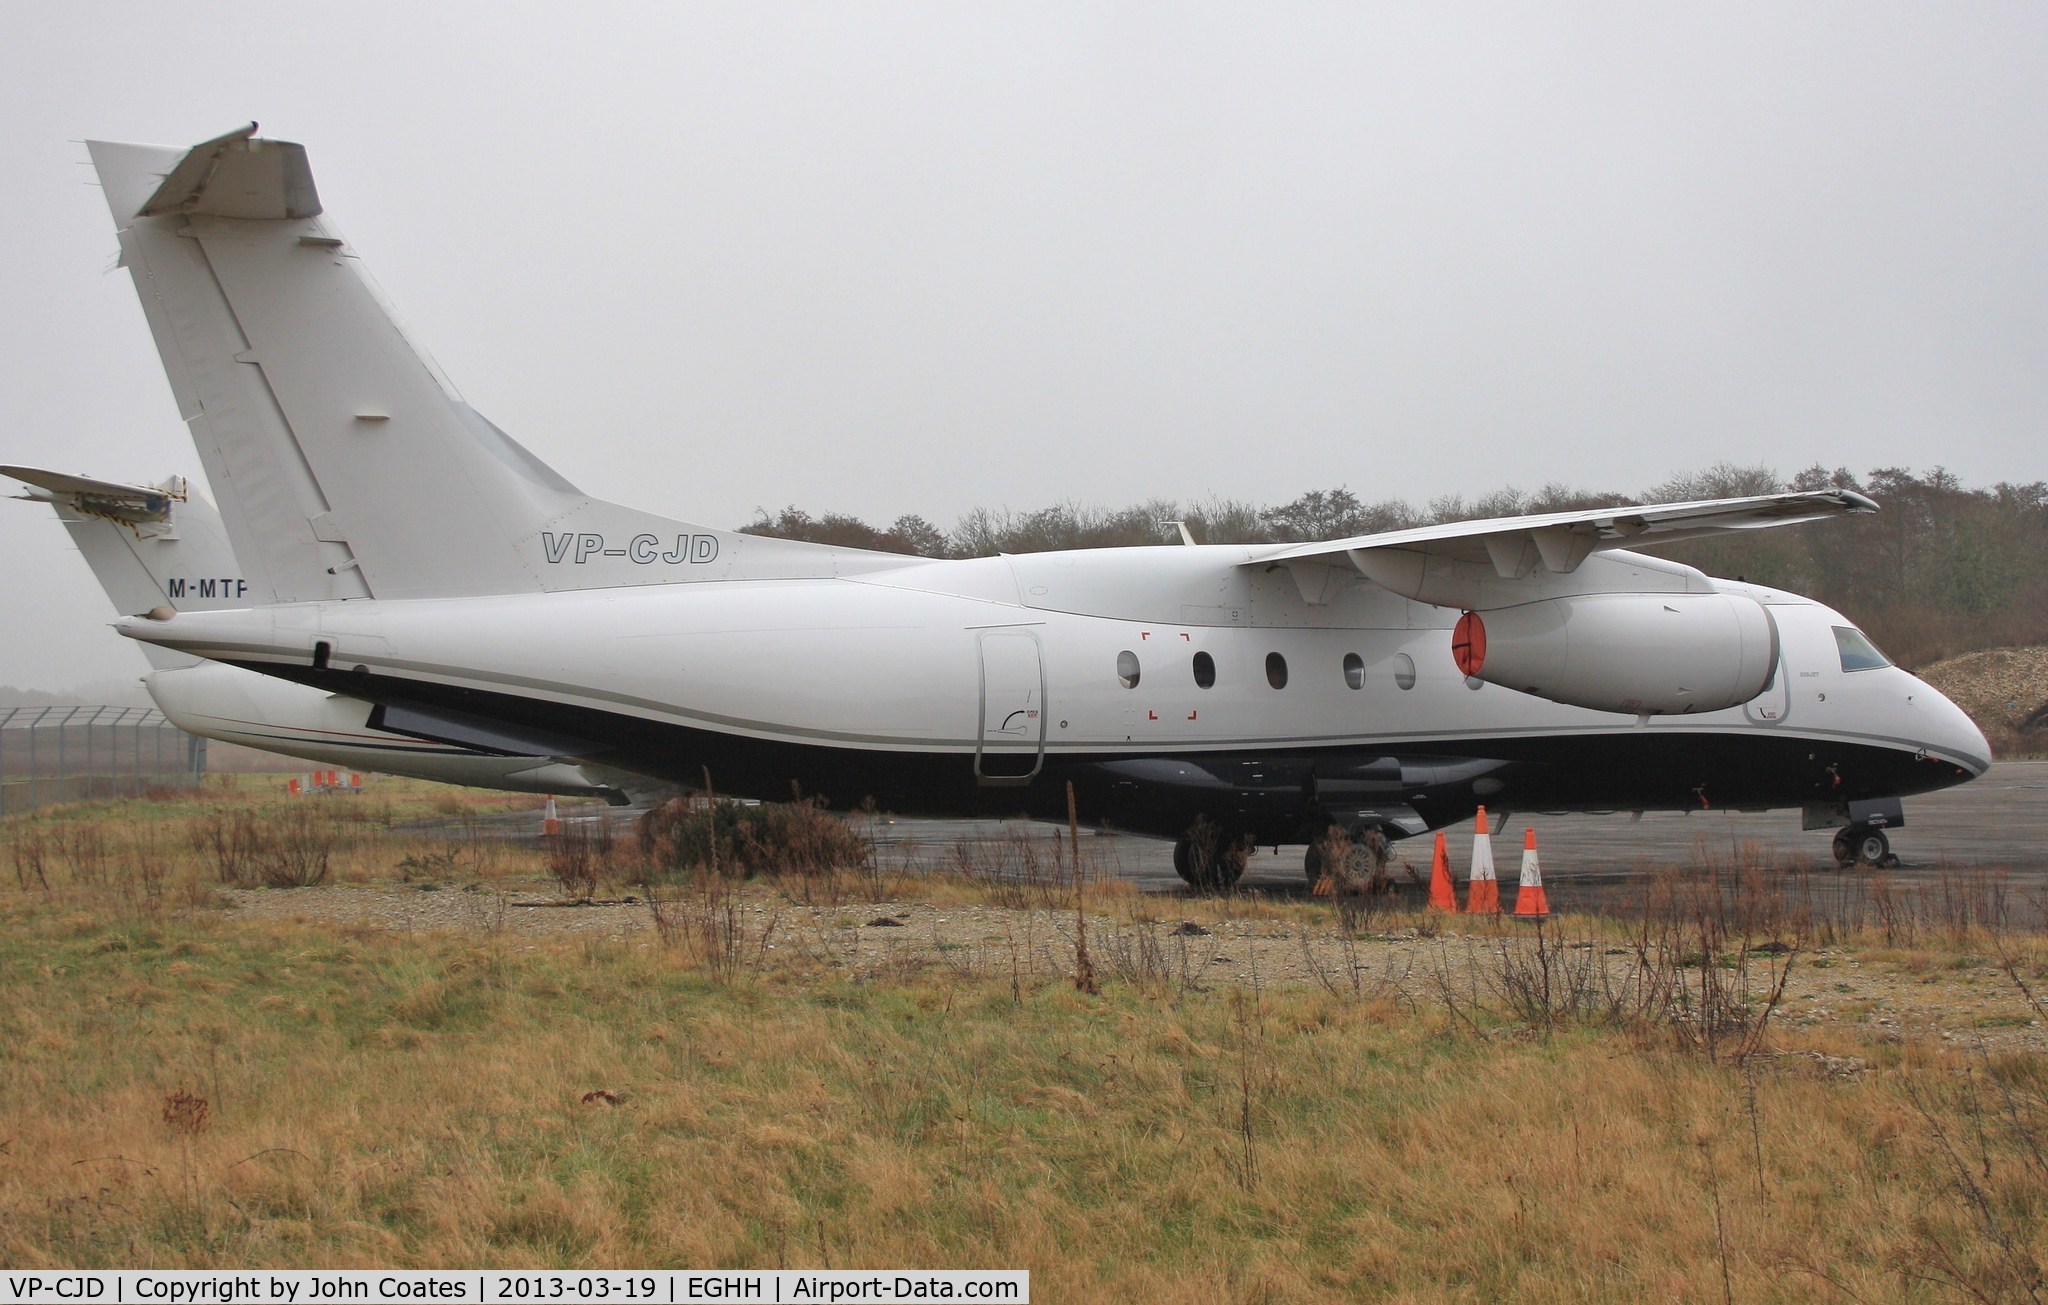 VP-CJD, 2008 Fairchild Dornier 328-300 328JET C/N 3221, Parked at JETS after arrival